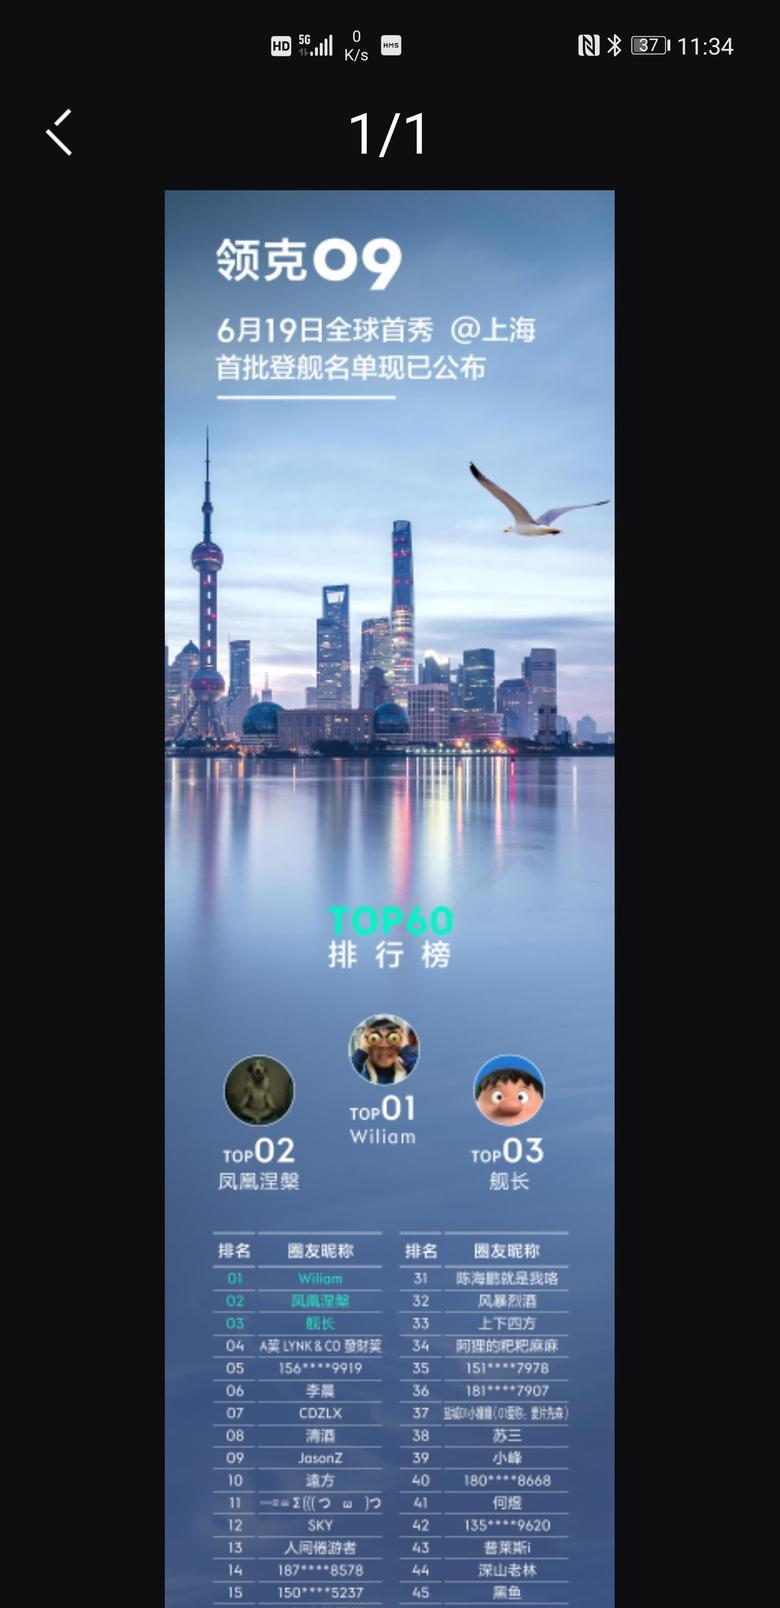 领克09 已接到客服电话，6.19全球首秀，位于上海。往返差旅全报销！